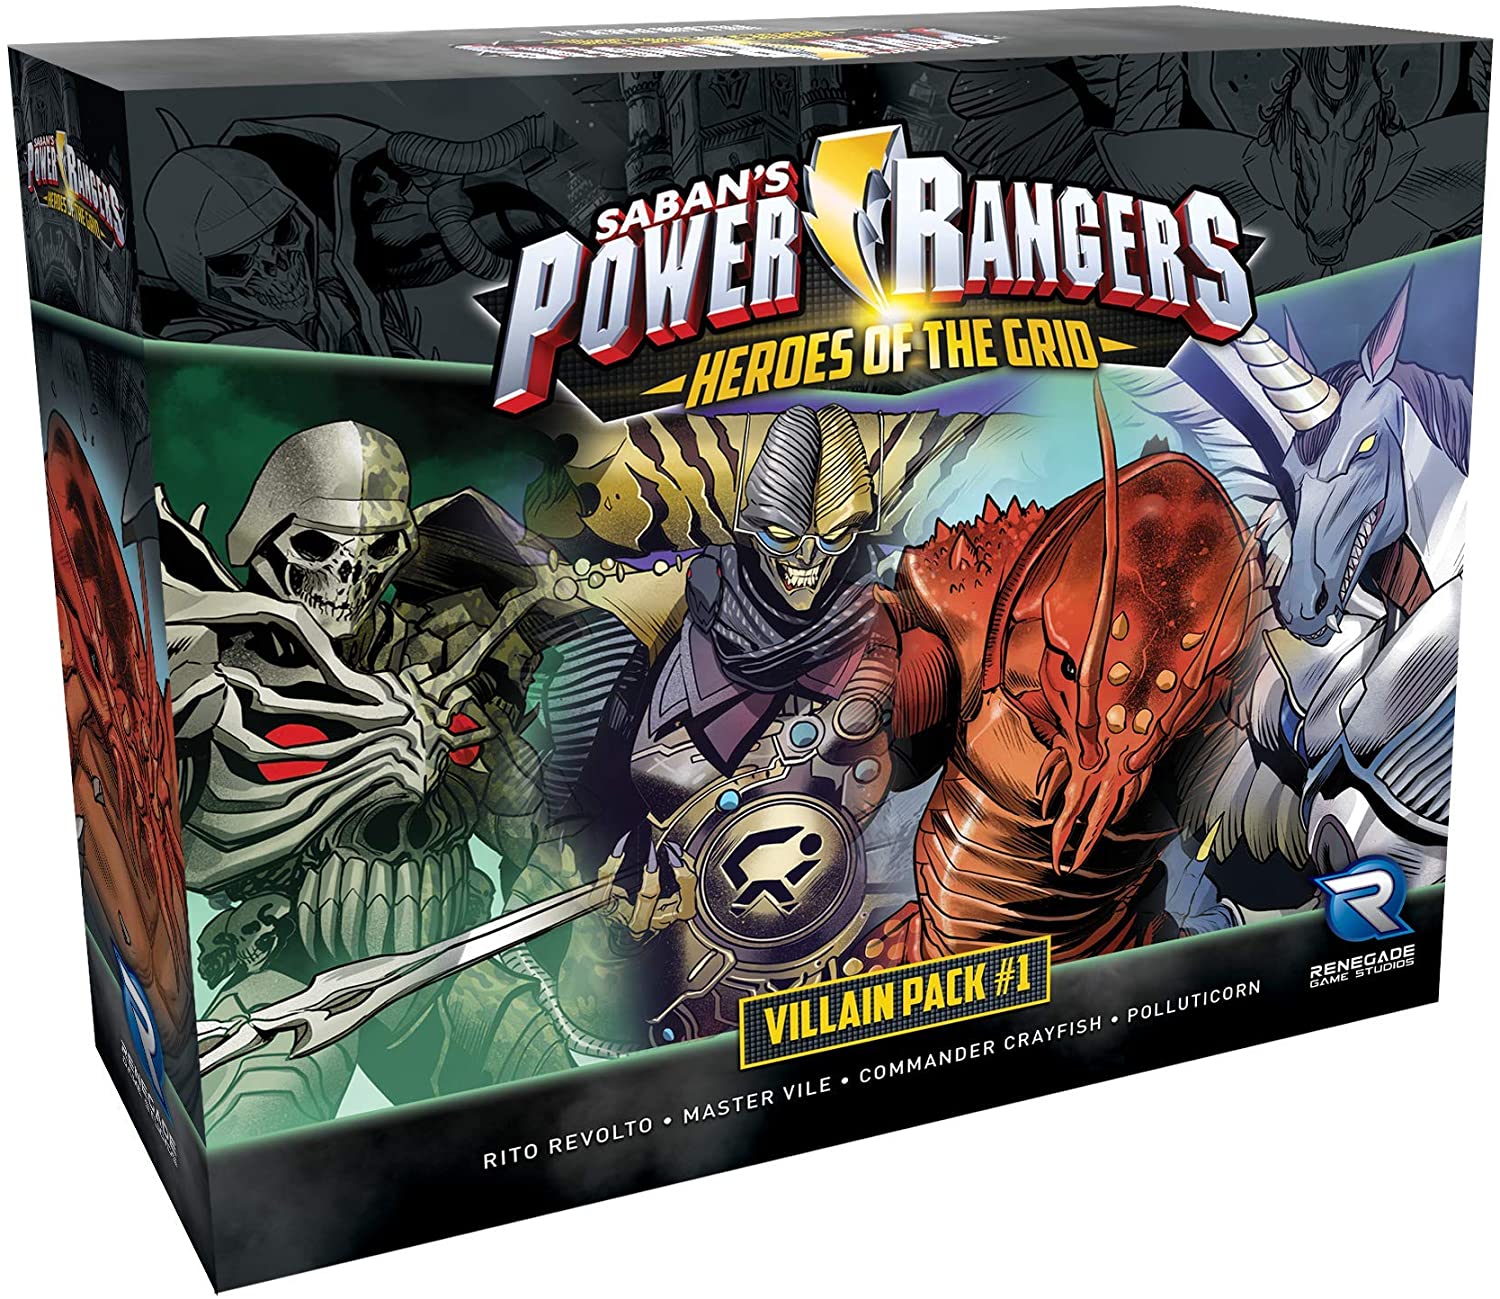 Power Rangers: Heroes of the Grid - Villian Pack #1